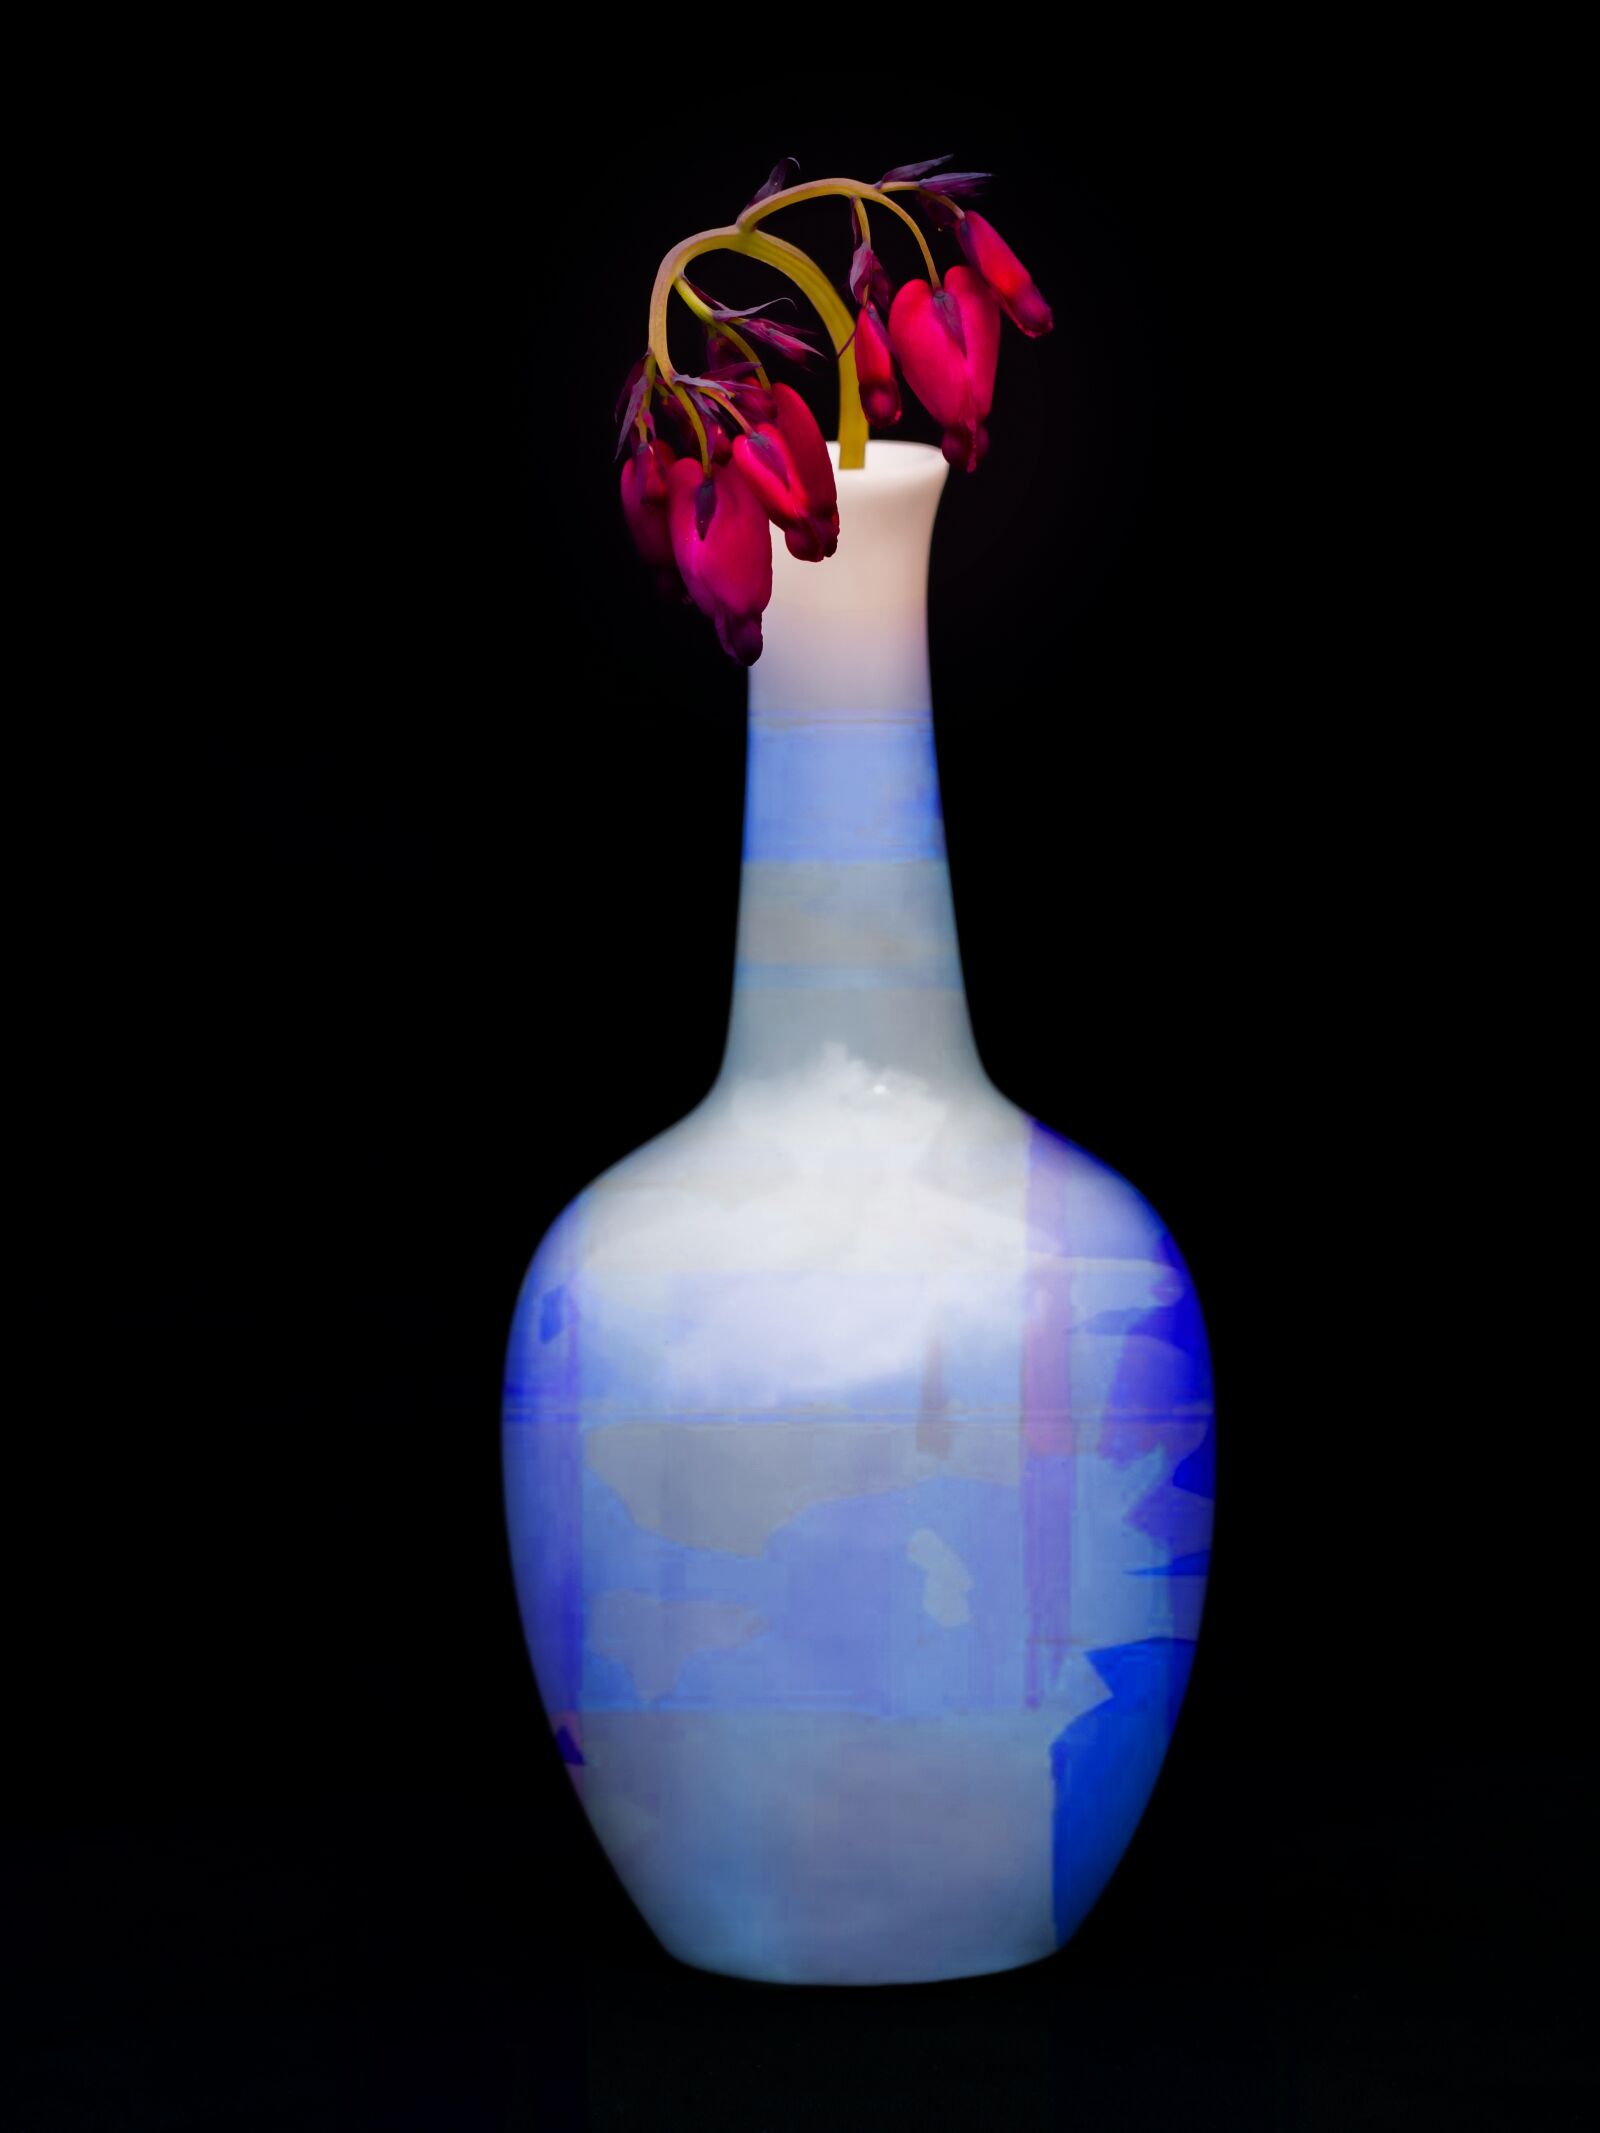 LUMIX G VARIO 45-200/F4.0-5.6II sample photo. Vase, bleeding heart, still photography